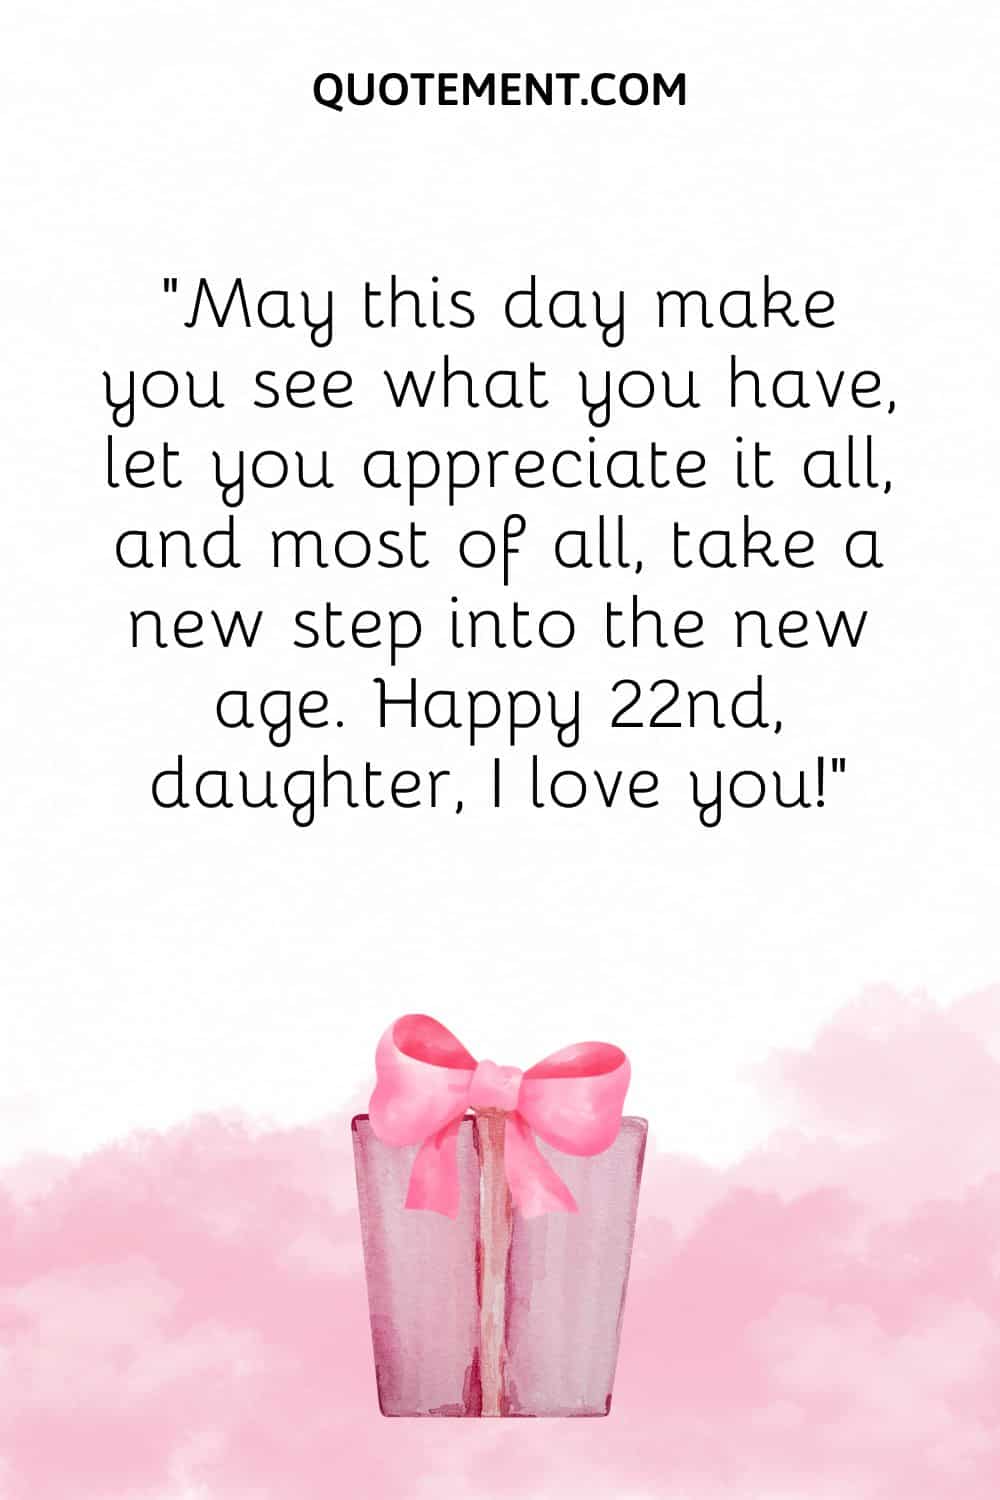 pink birthday gift image representing happy 22nd birthday daughter wish